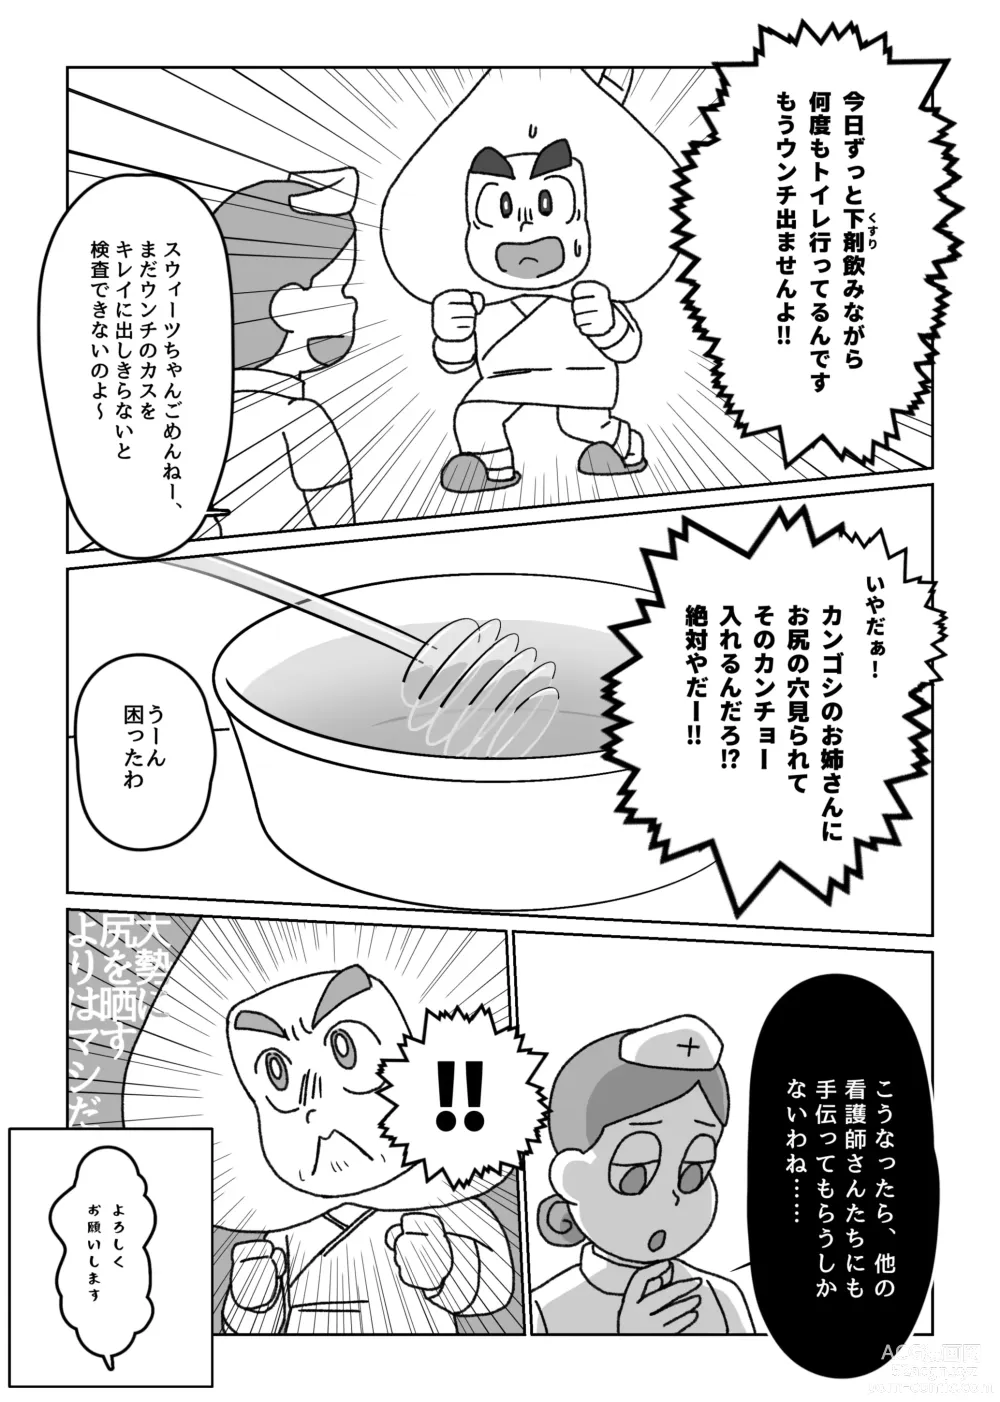 Page 7 of doujinshi Kikou Sairoku / Suui Dappun Ansoro Yori Furenzu